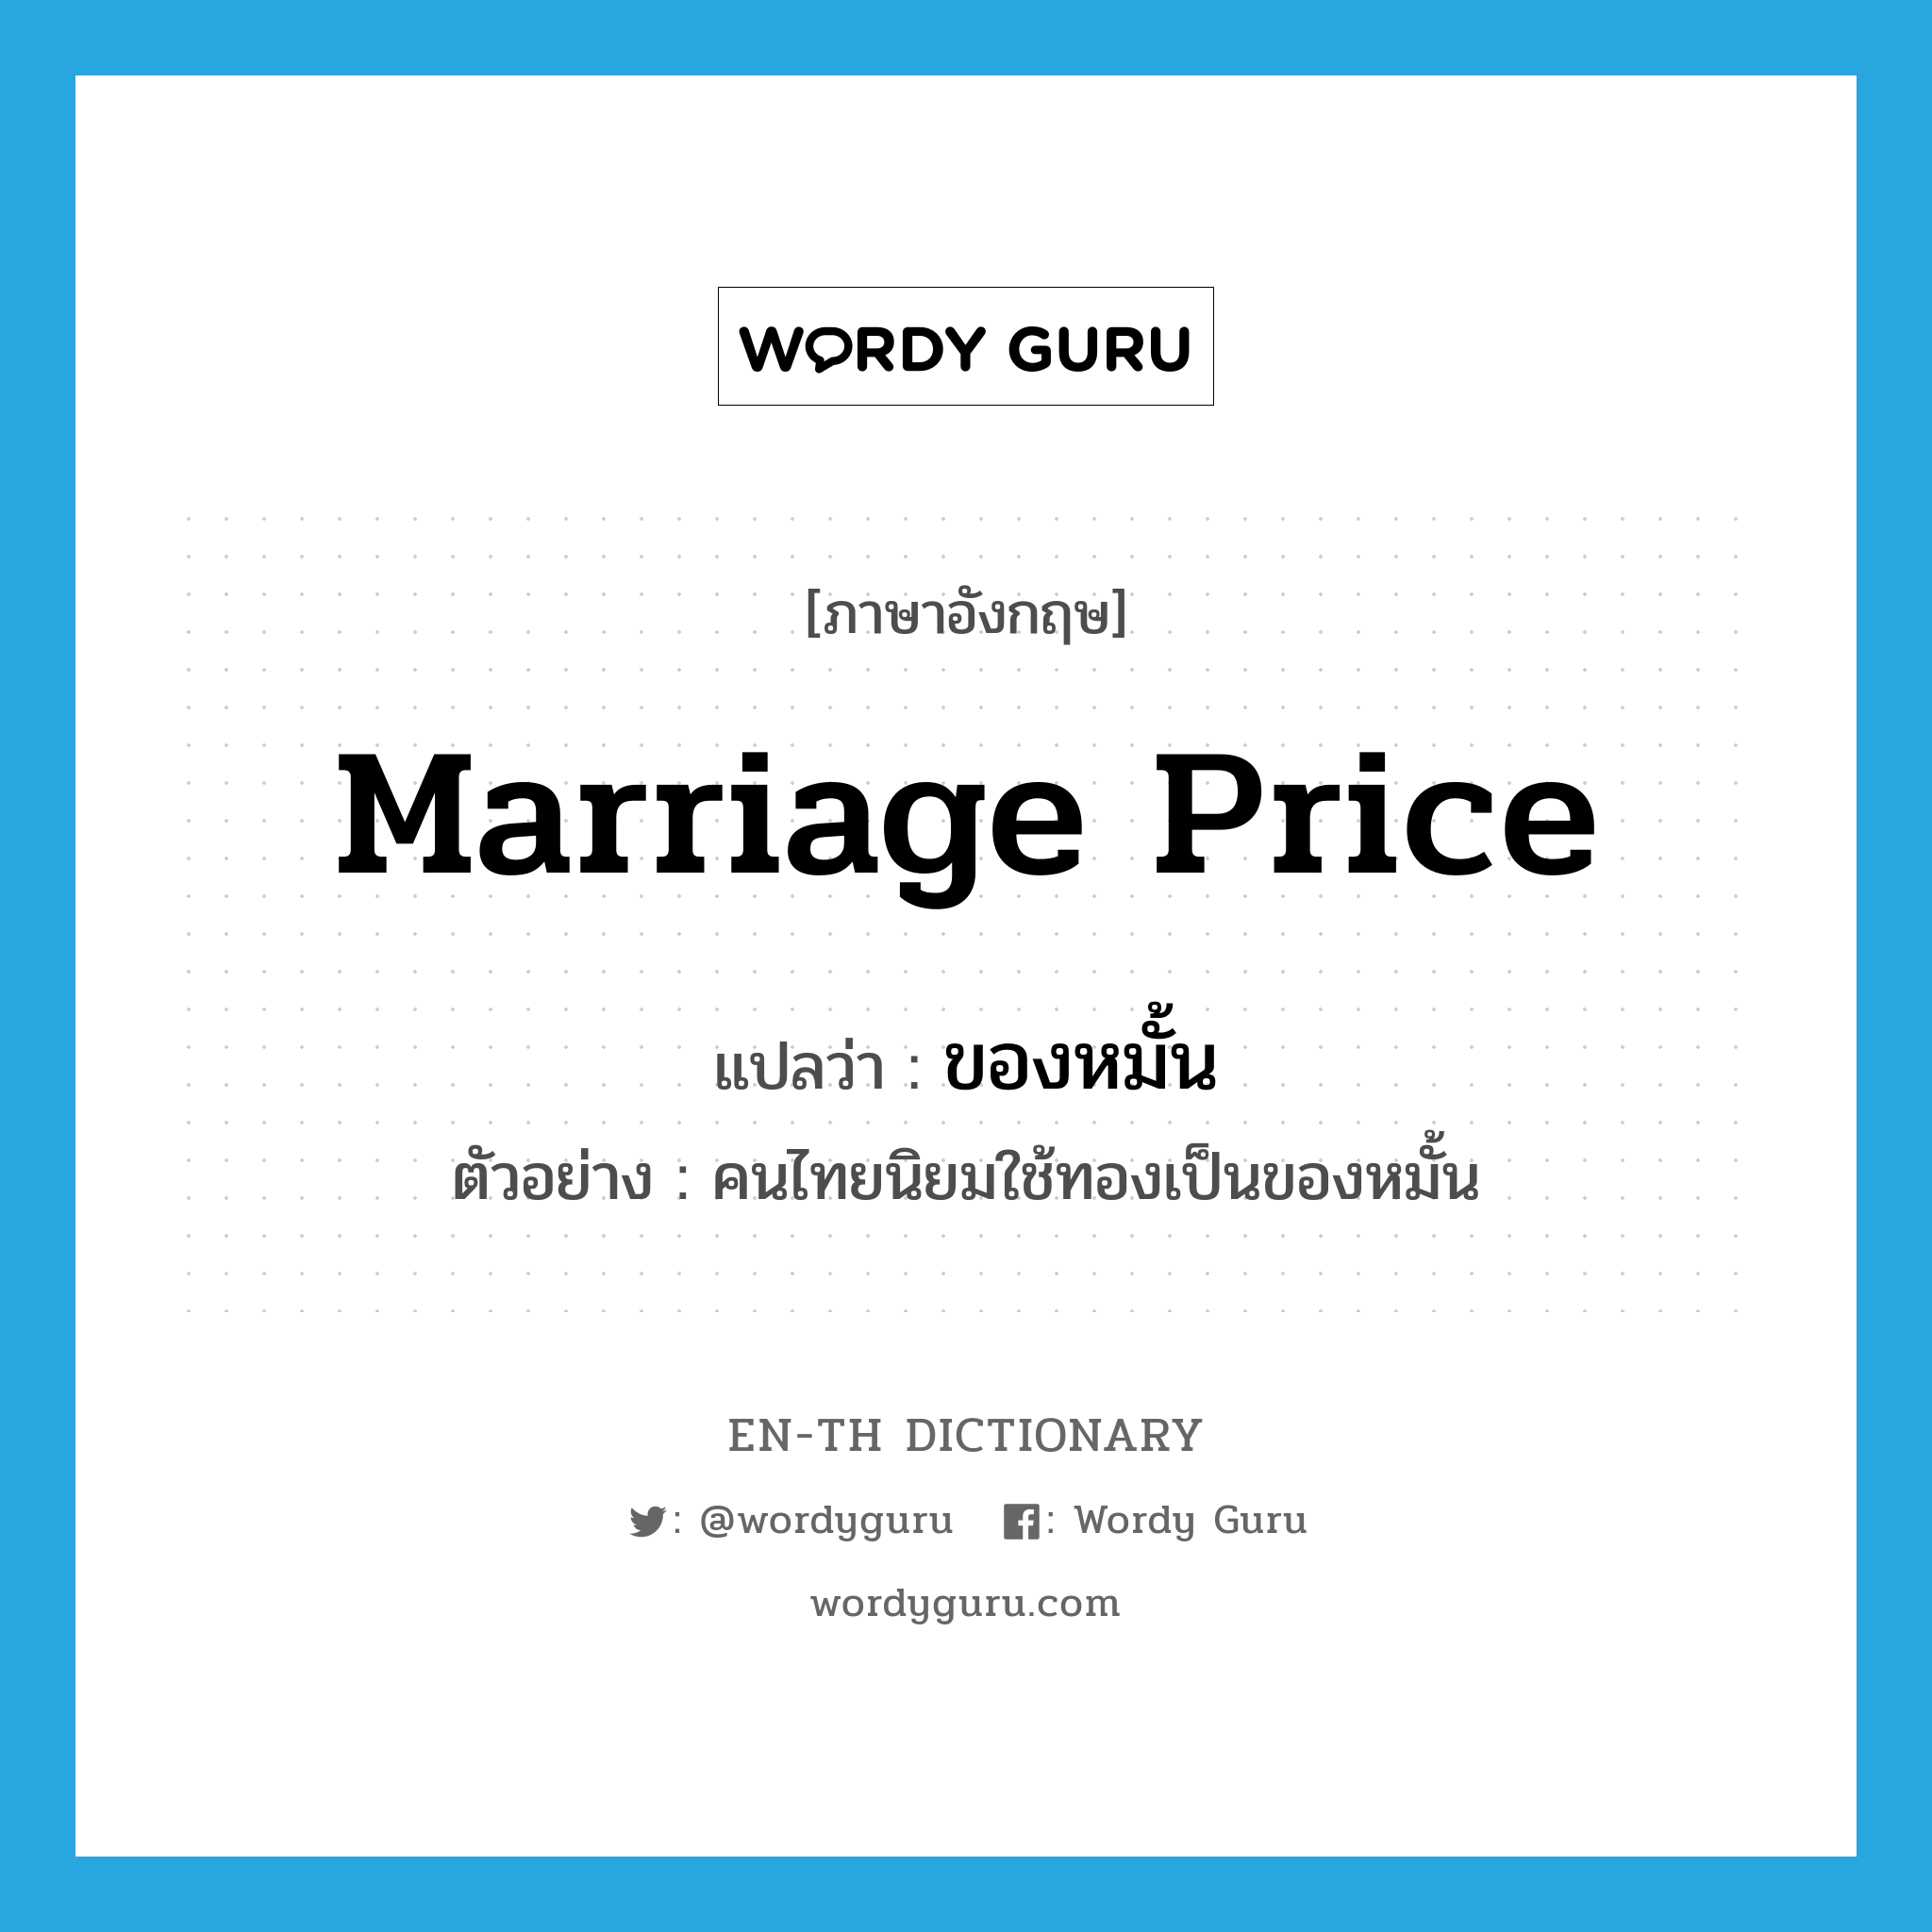 marriage price แปลว่า?, คำศัพท์ภาษาอังกฤษ marriage price แปลว่า ของหมั้น ประเภท N ตัวอย่าง คนไทยนิยมใช้ทองเป็นของหมั้น หมวด N